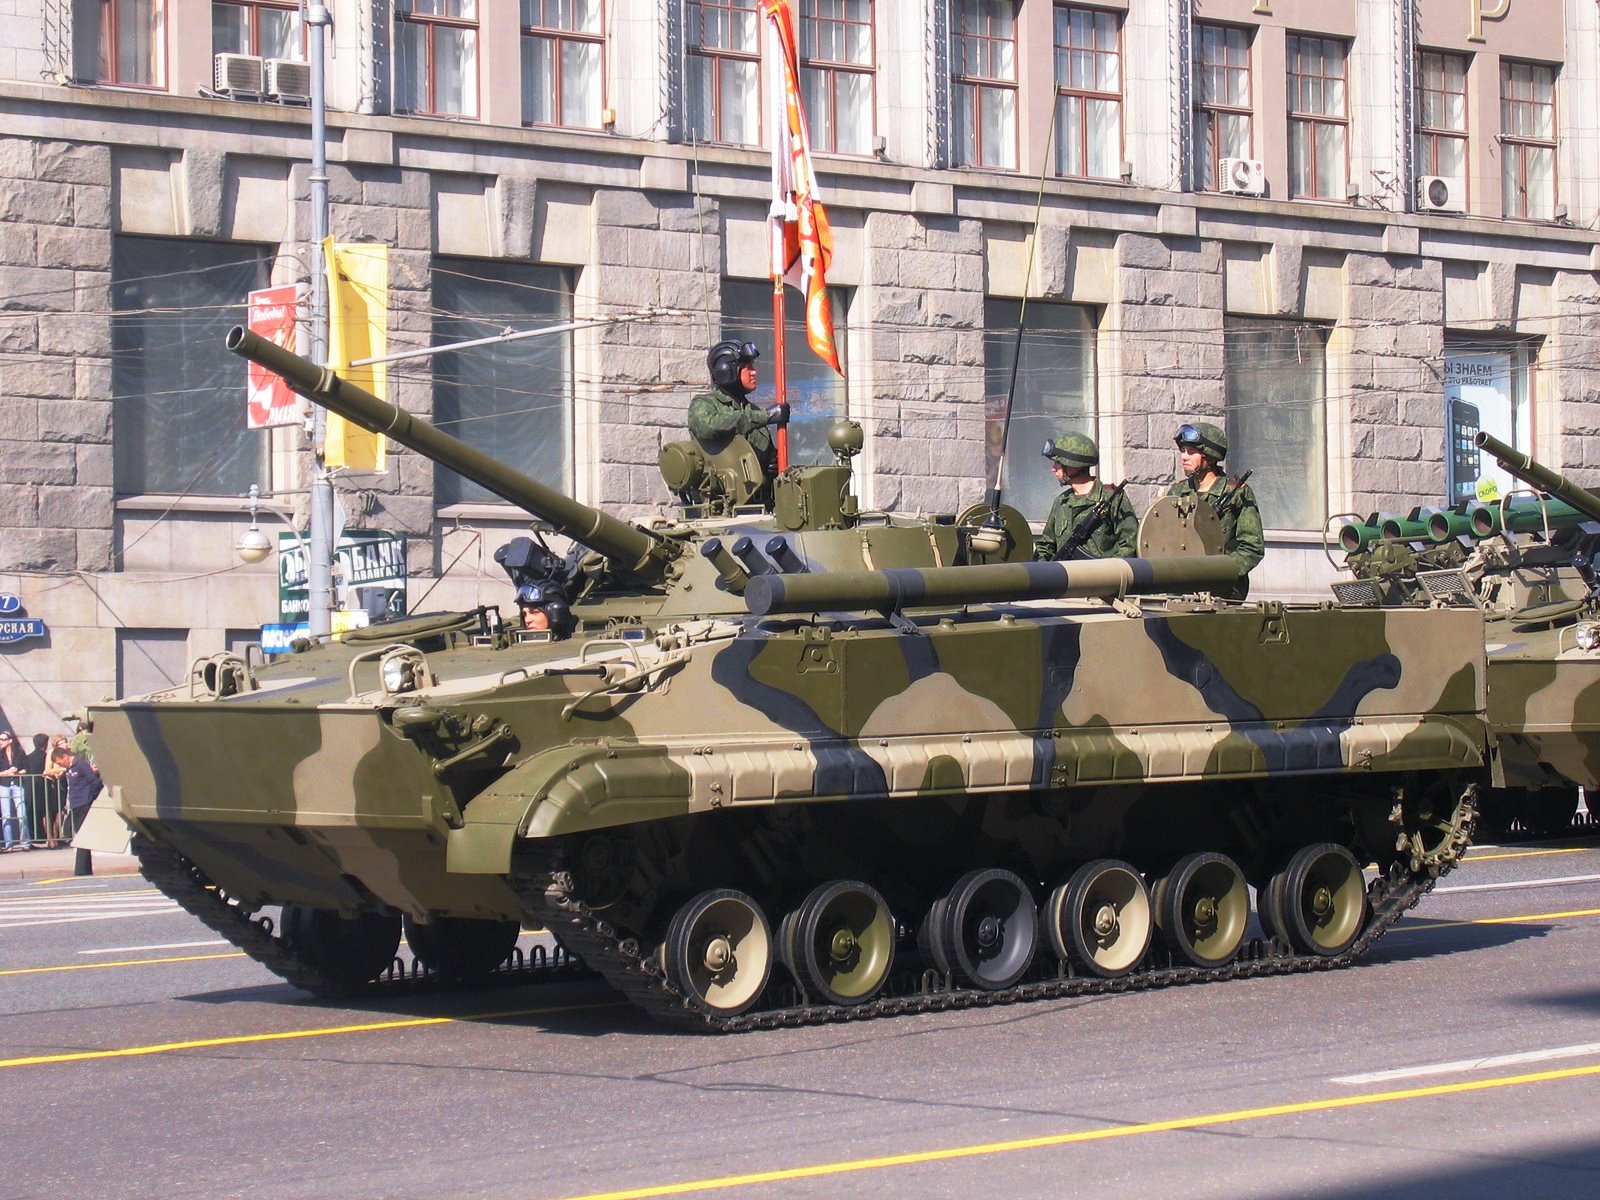 Được biết, xe chiến đấu bộ binh BMP-3F là một biến thể từ BMP-3, được phát triển từ đầu thập niên 1980 và chính thức đưa vào phục vụ trong quân đội Liên Xô năm 1987. Nó xuất hiện lần đầu tiên tại Lễ duyệt binh kỷ niệm ngày chiến thắng phát xít năm 1990, do đó BMP-3 có mã NATO là IFV M1990/1.